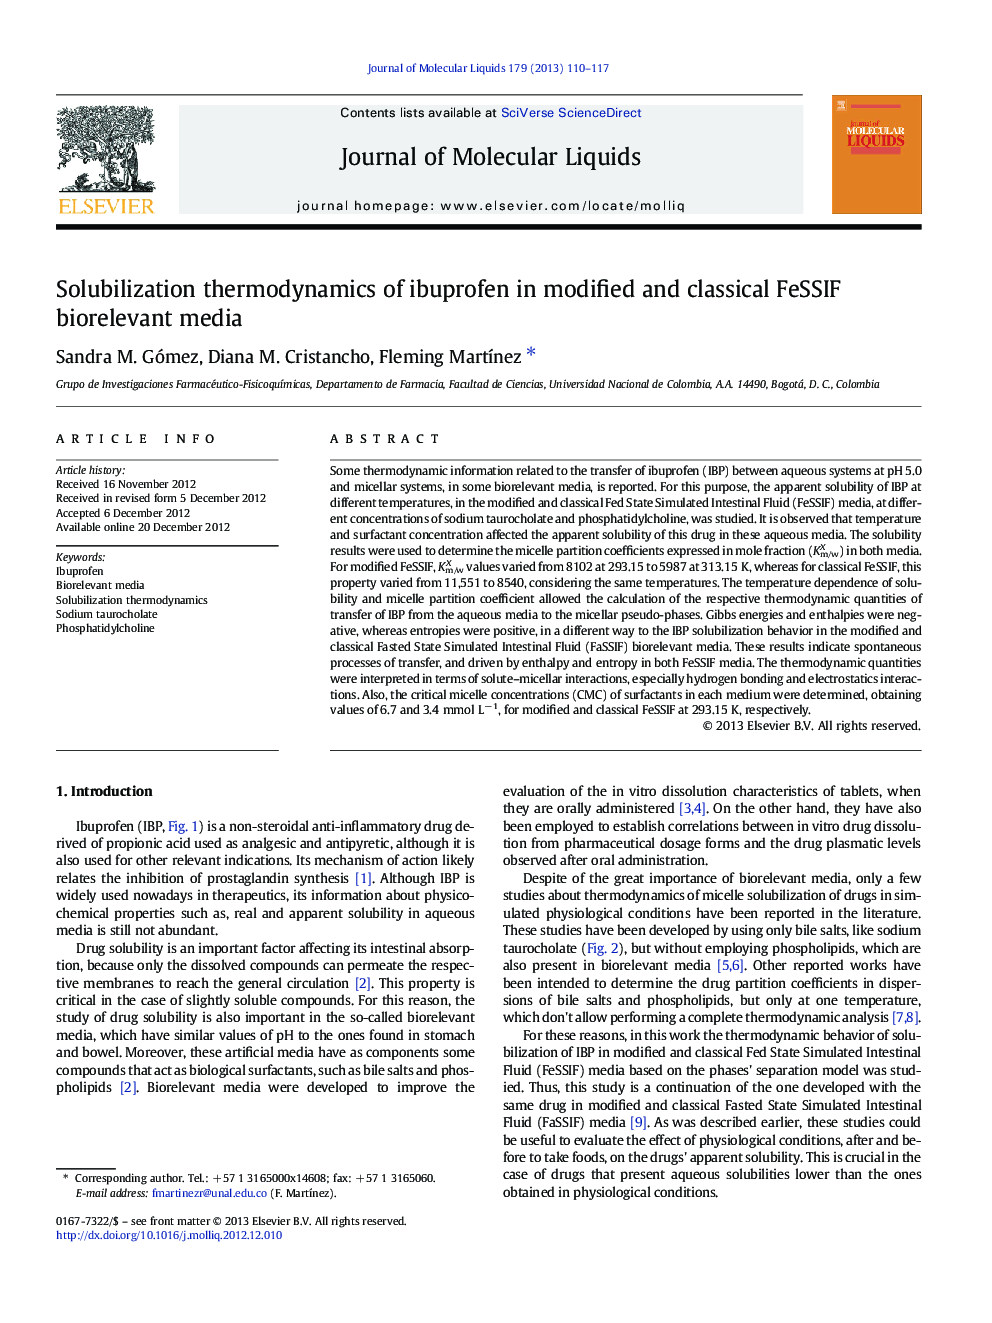 Solubilization thermodynamics of ibuprofen in modified and classical FeSSIF biorelevant media